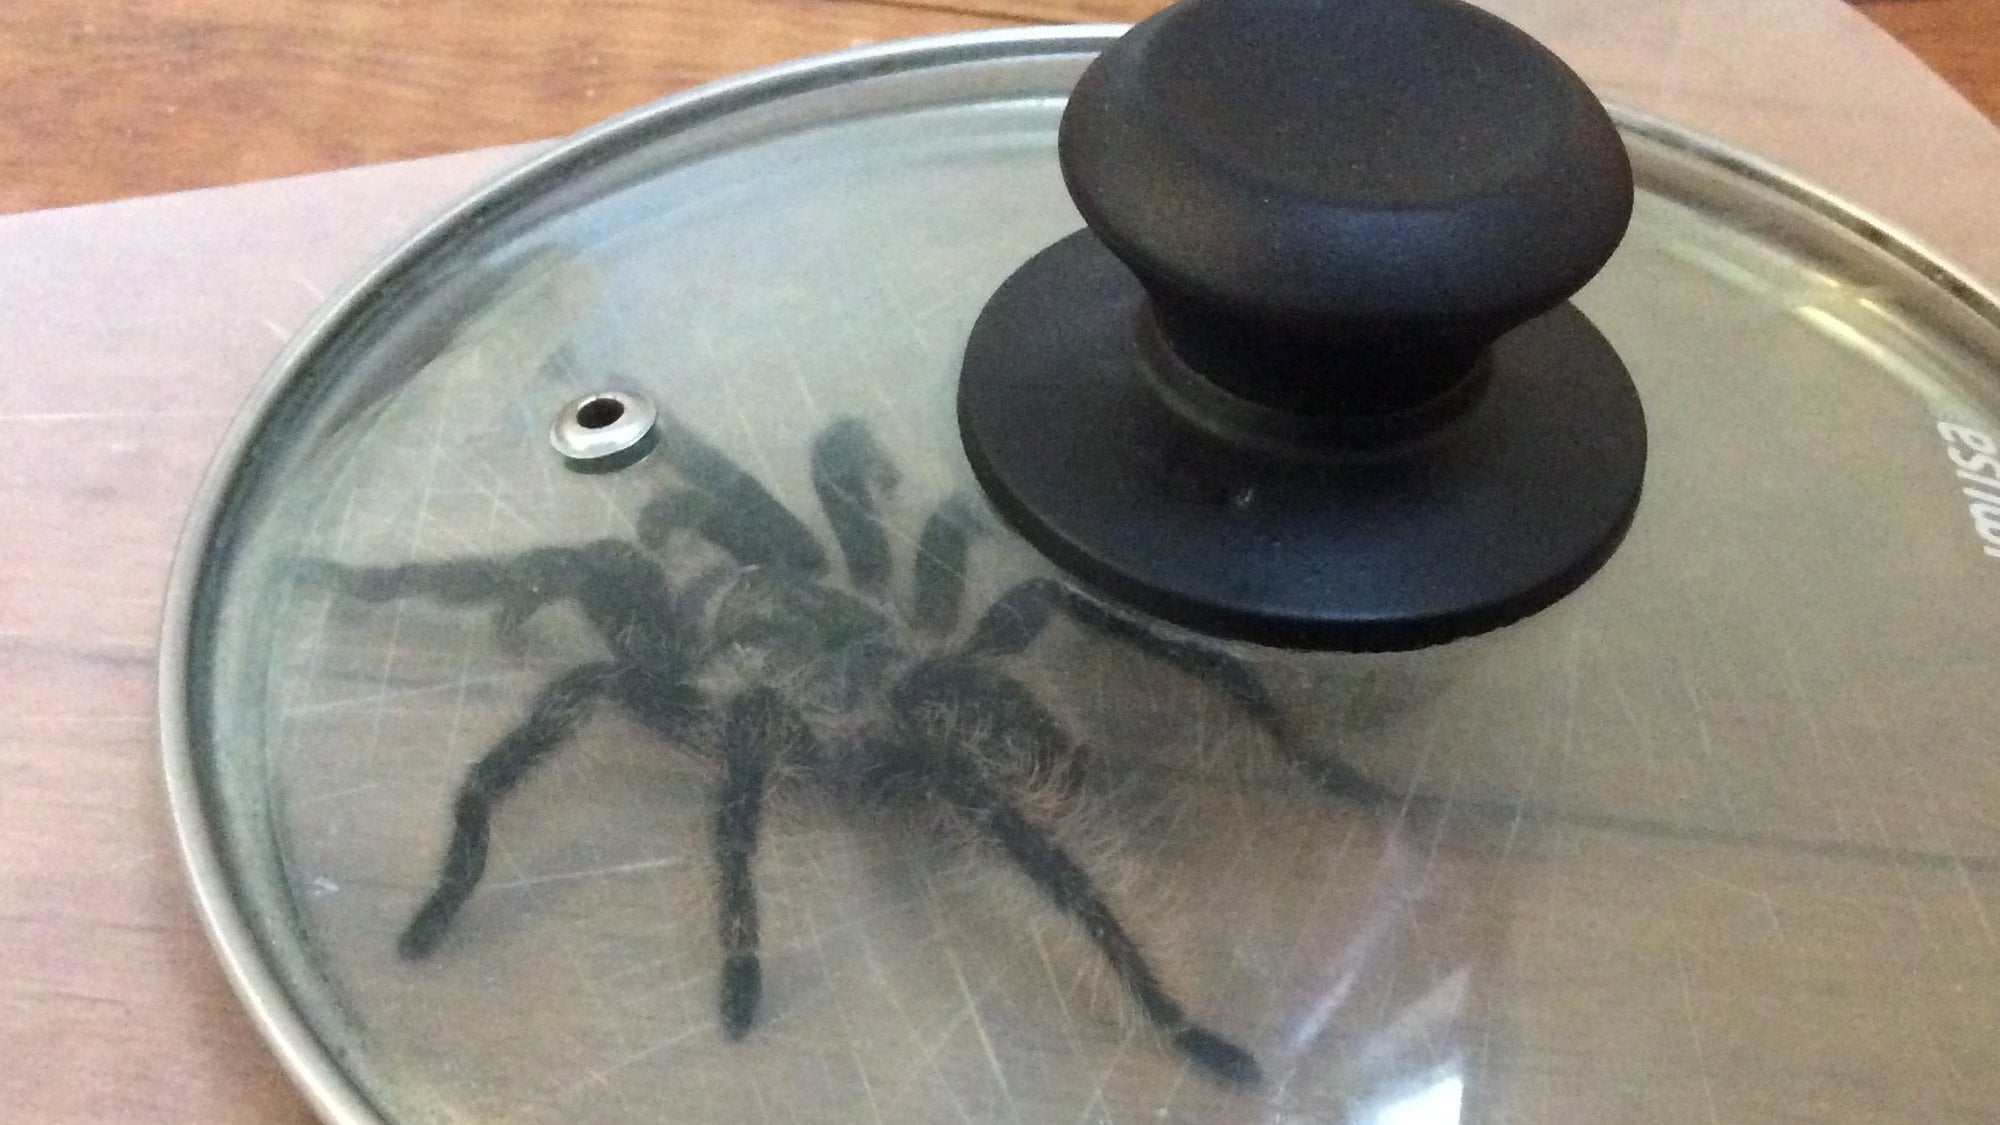 Tarantula captured under a glass pot lid